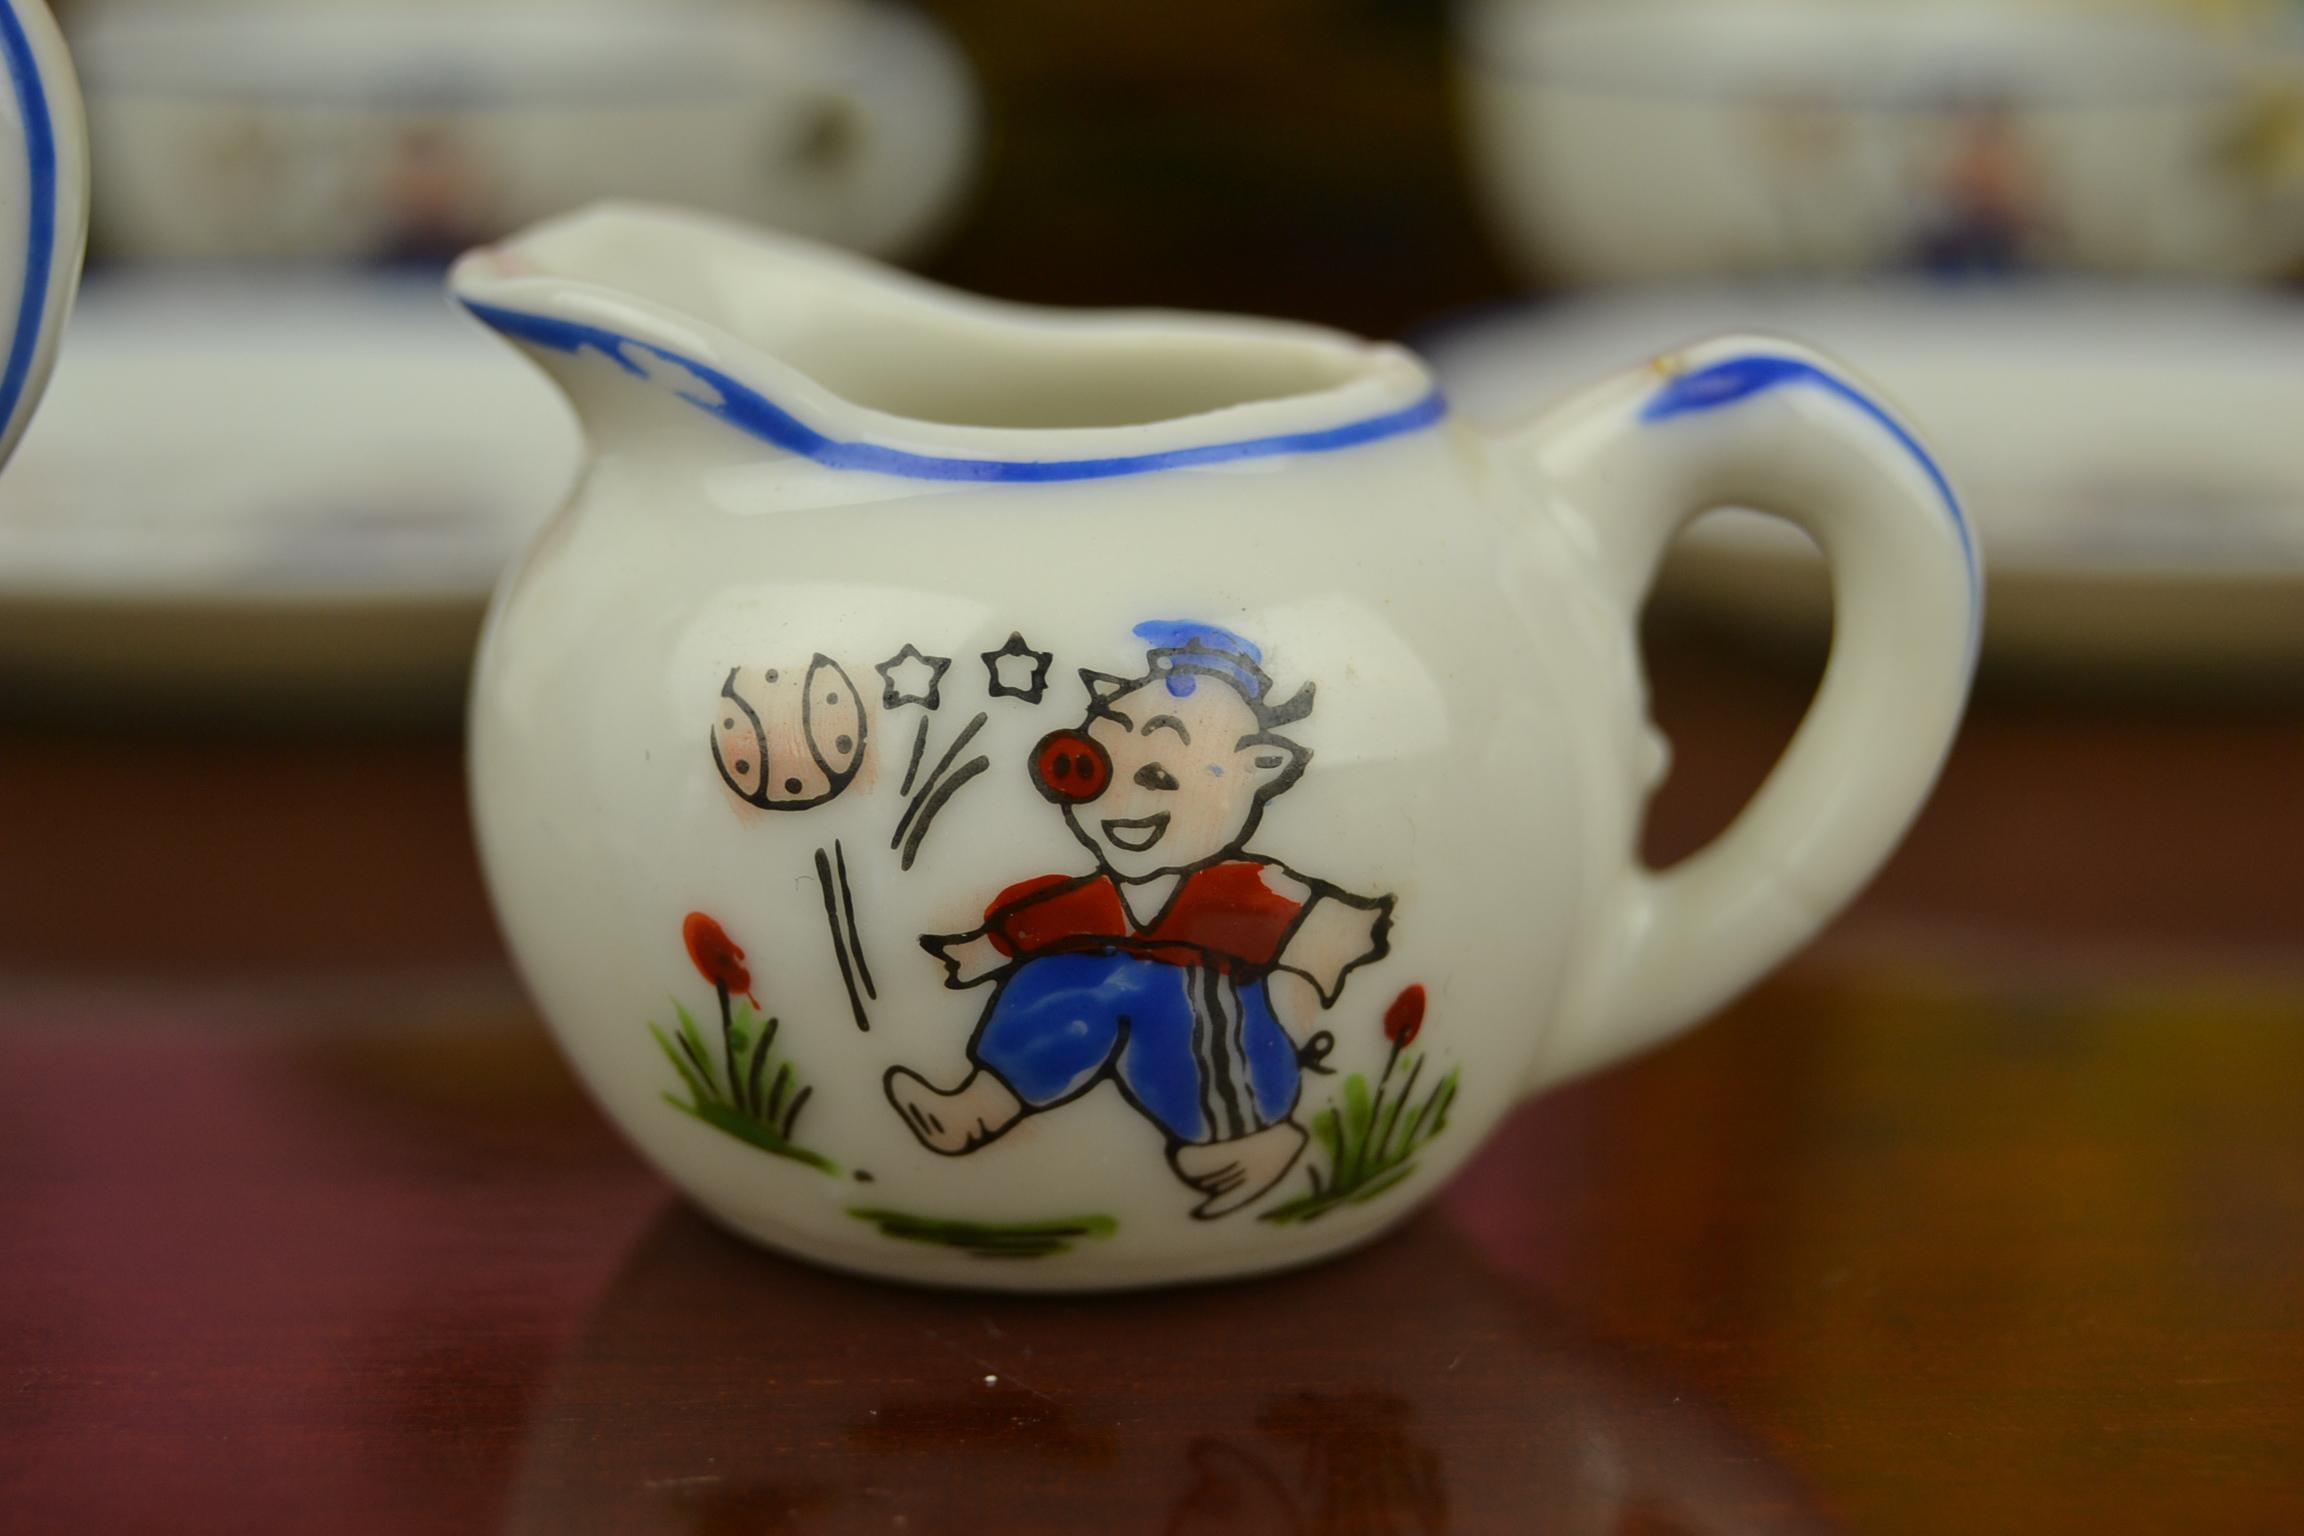 Porcelain Tea Set for Children, Pig Toy Tea Set, Foreign, Made in Japan 1